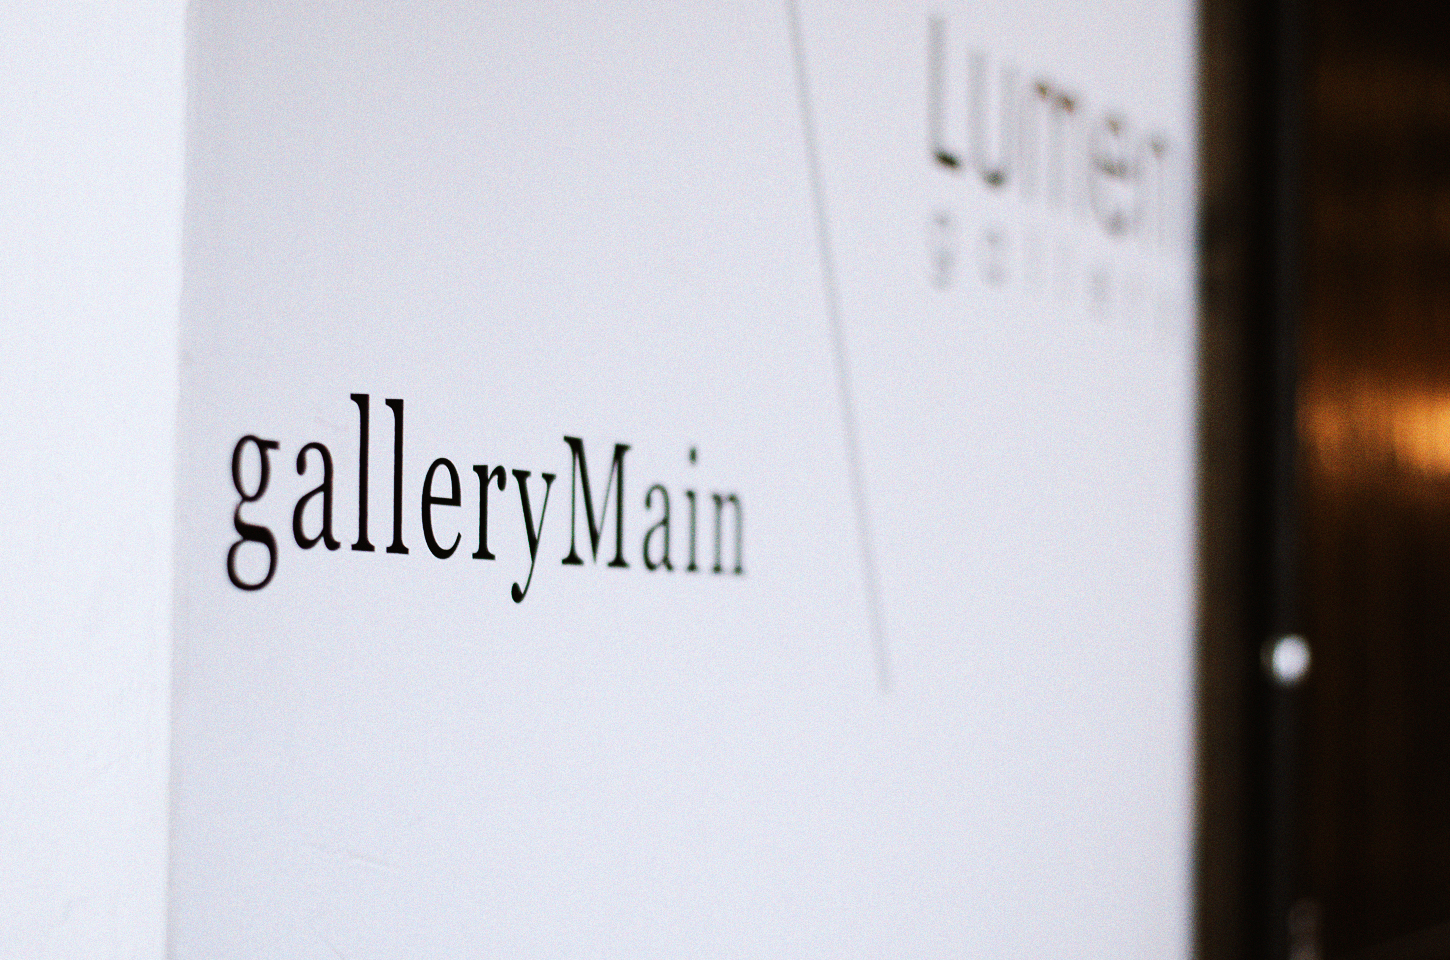 galleryMain入口のロゴ